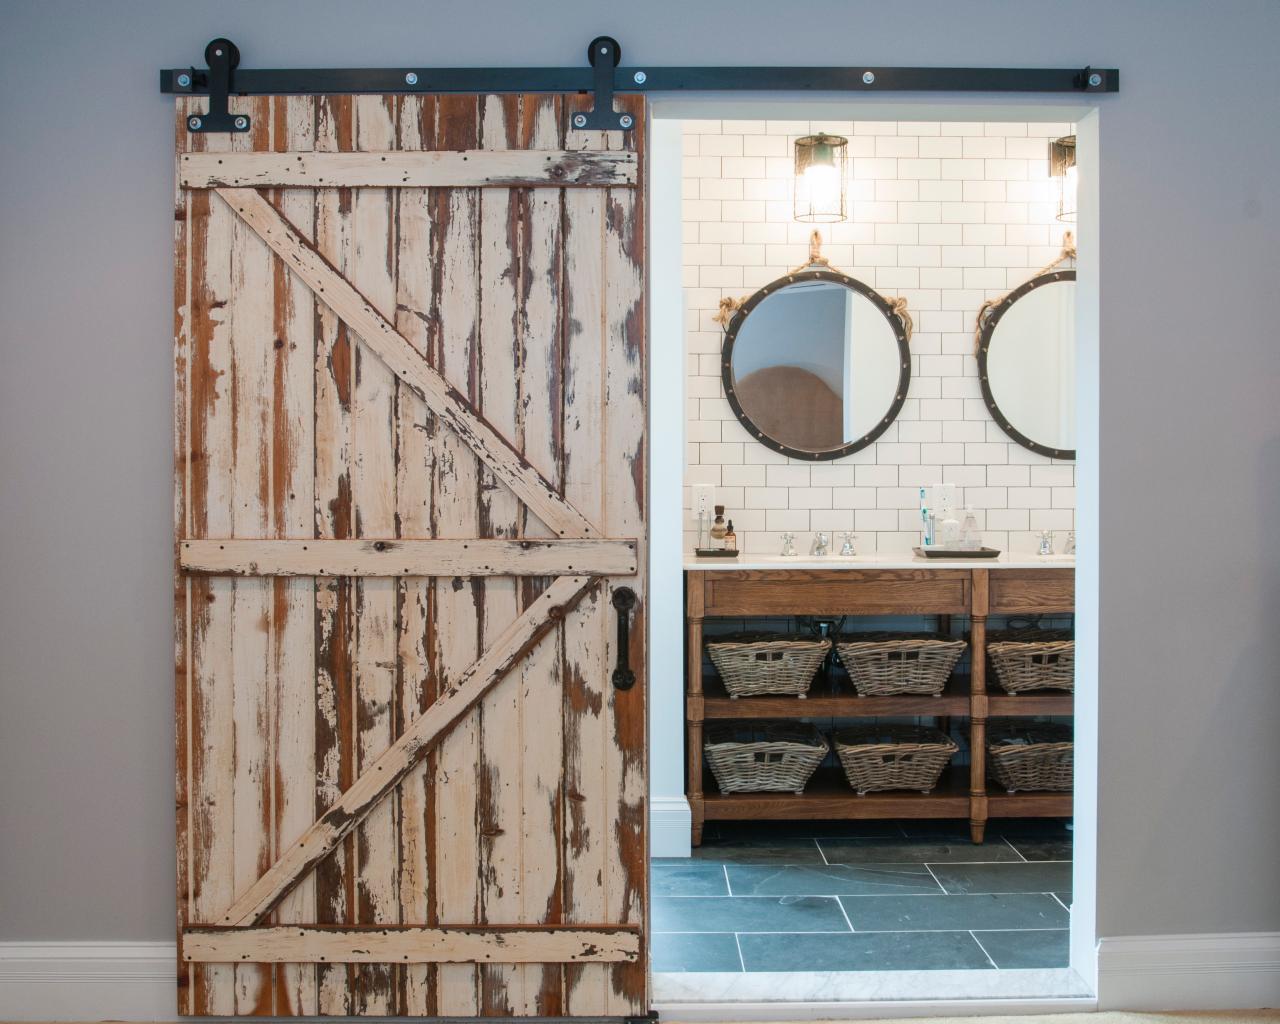  łazienka rustykalna, łazienka w stylu farmhouse, jak urządzić stylową łazienkę, trendy łazienkowe, łazienka w skandynawskim stylu